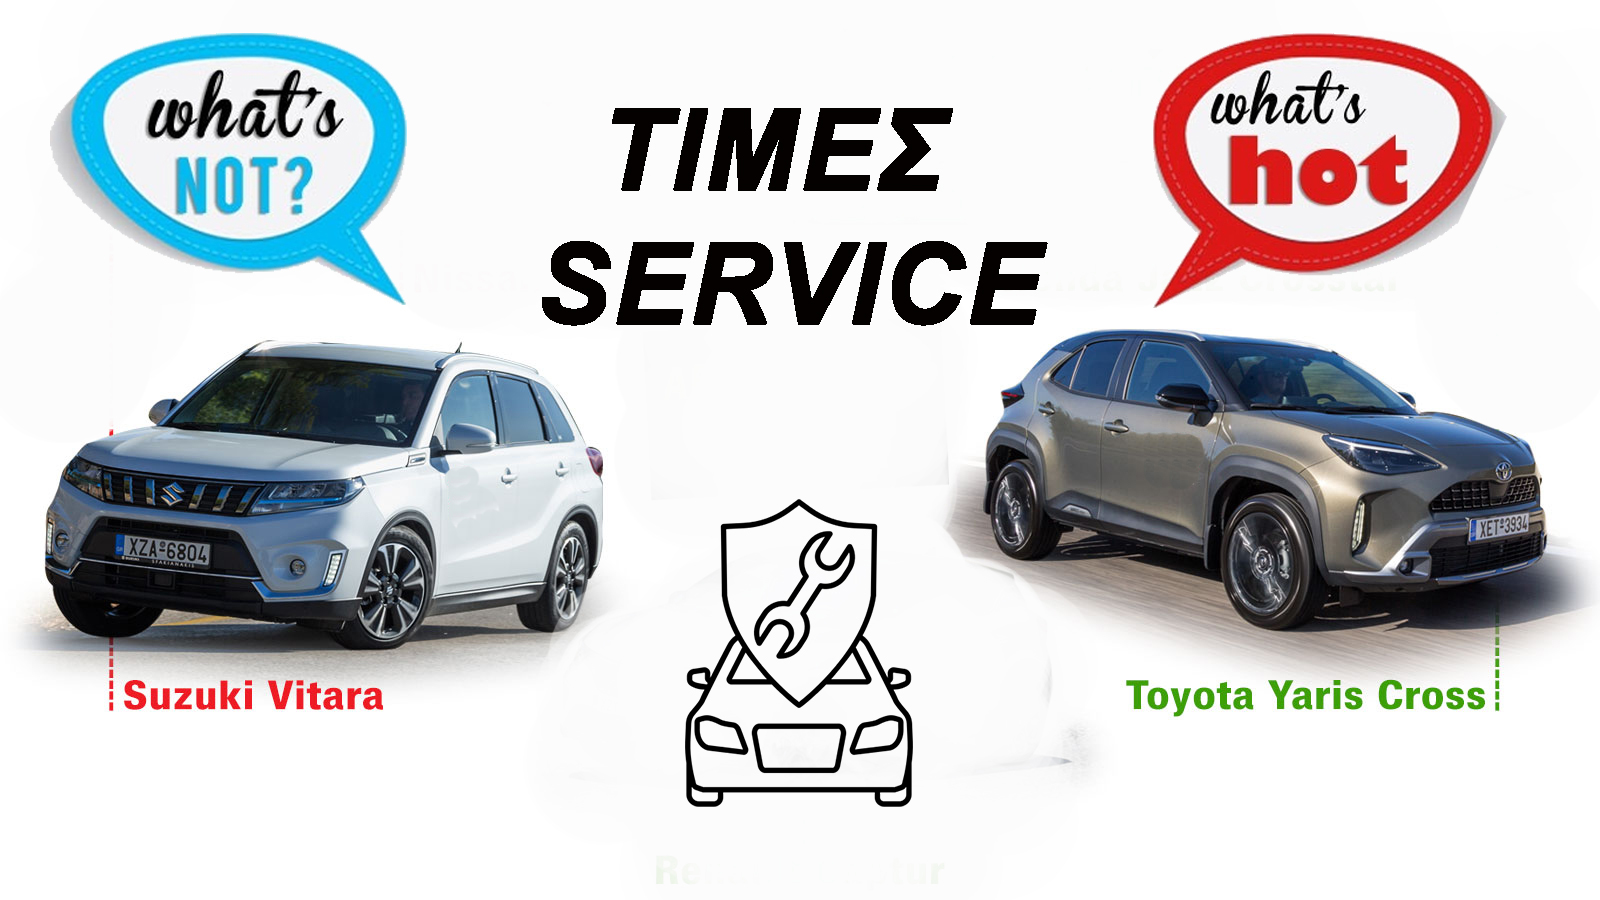 Φθηνότερη η Toyota και ακριβότερη η Suzuki στο service υβριδικών